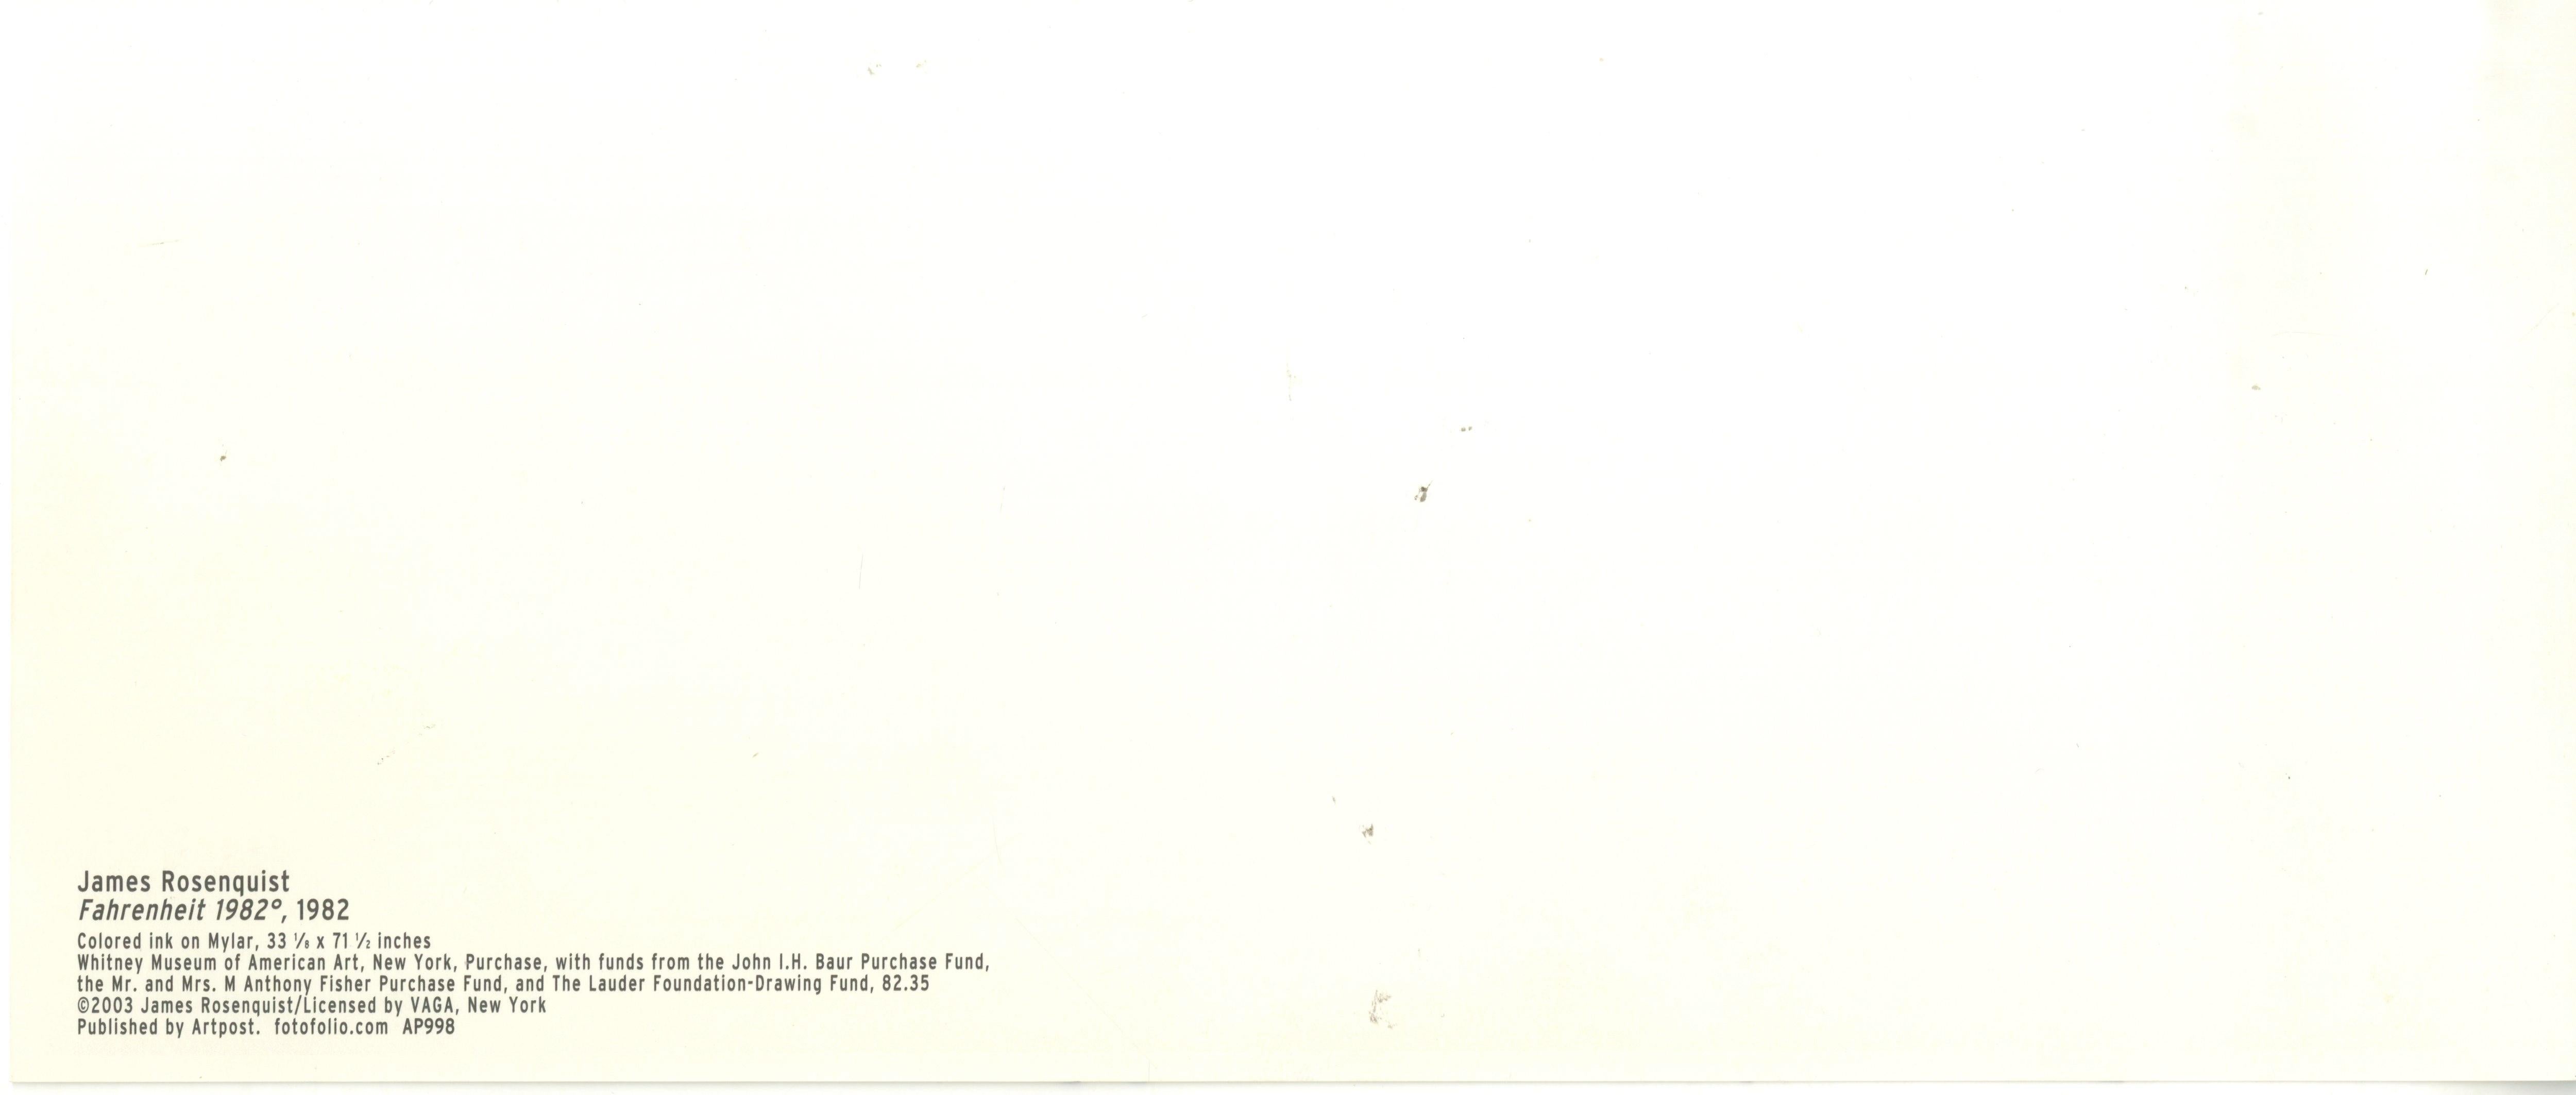 Fahrenheit 1982 (carte signée à la main, provenant de la collection du président de l'UACC) - Print de James Rosenquist